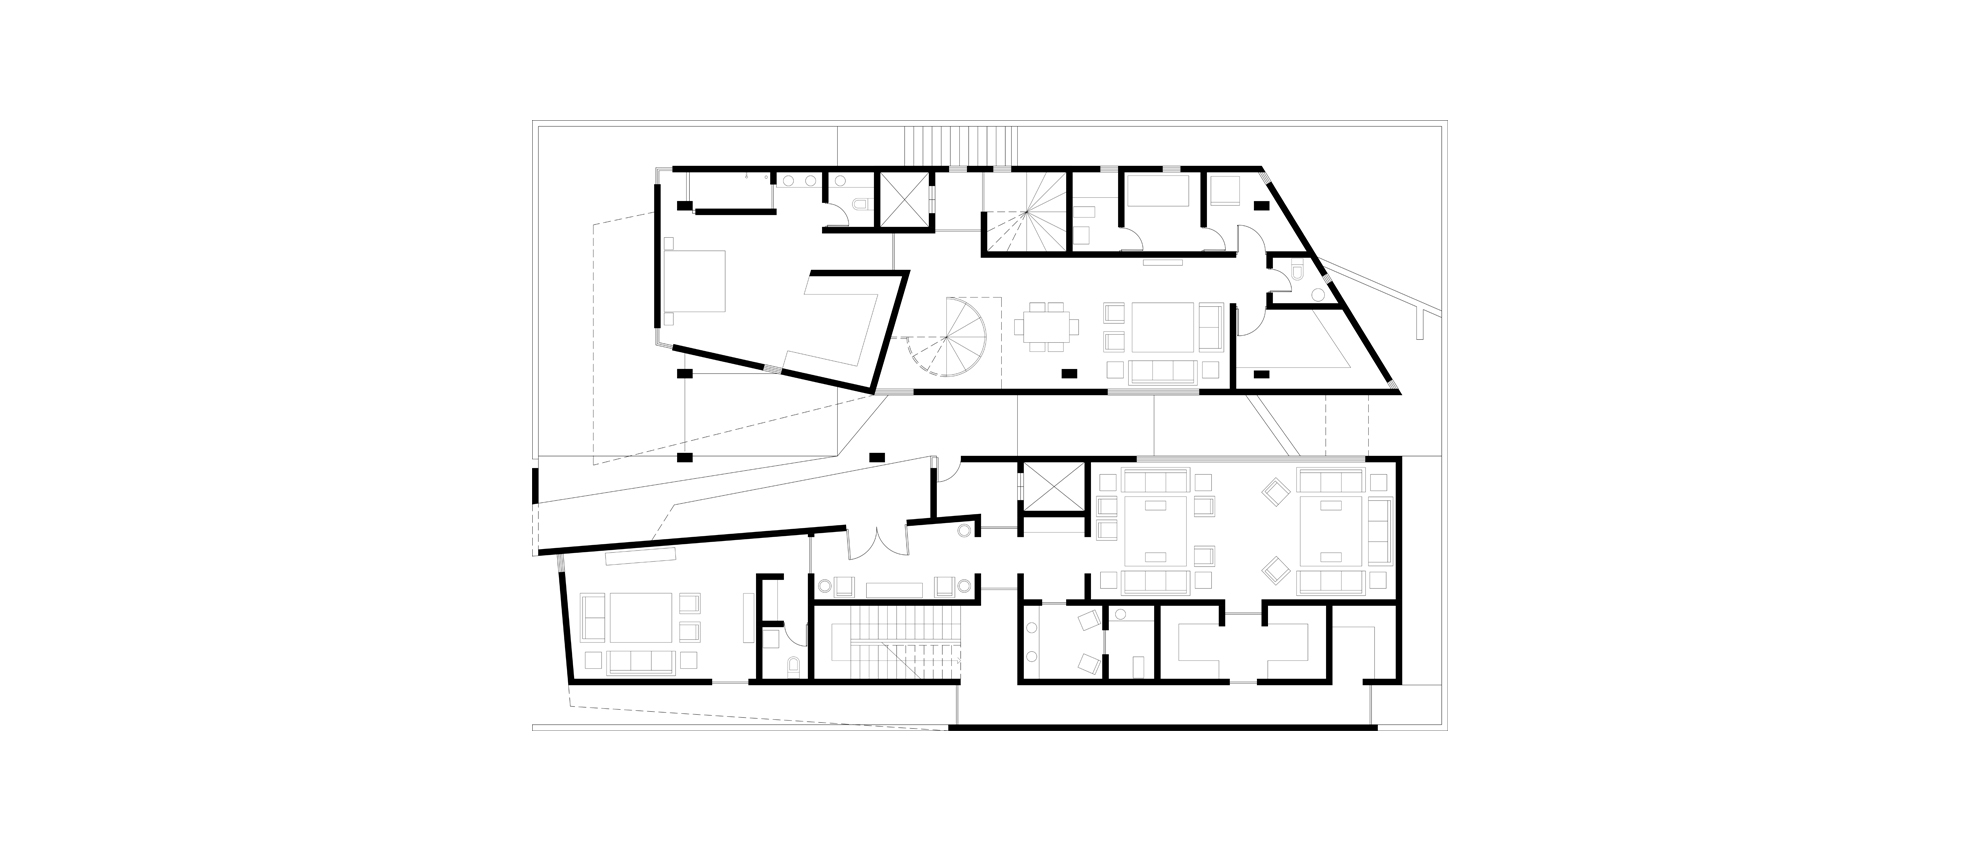 1Ground Floor Plan